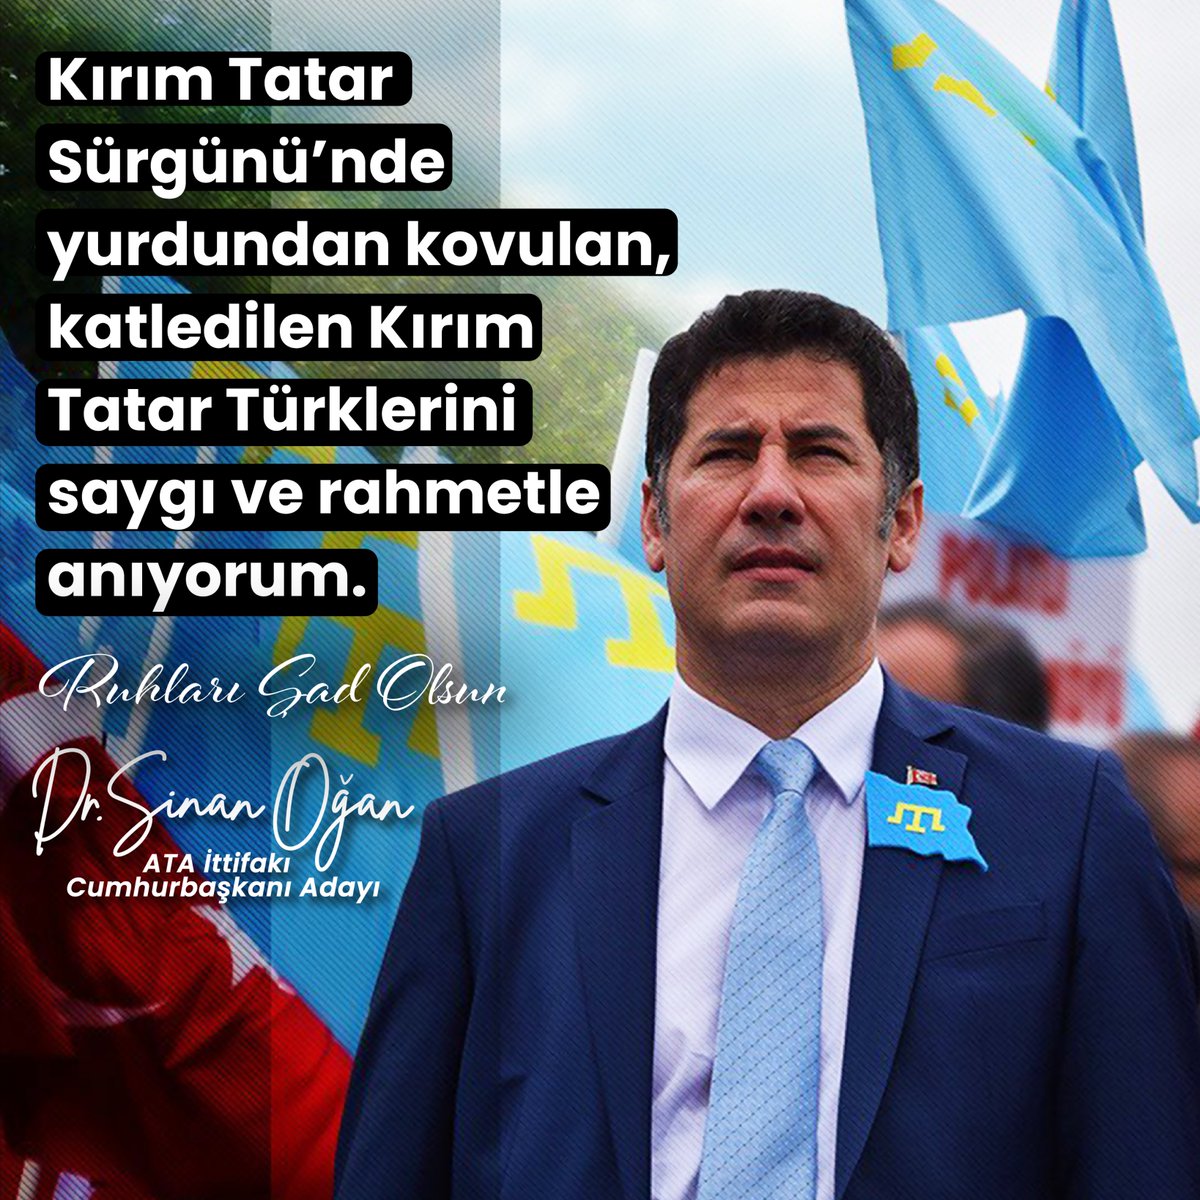 Kırım Tatar Sürgünü'nde yurdundan kovulan, katledilen Kırım Tatar Türklerini saygı ve rahmetle anıyoruz...